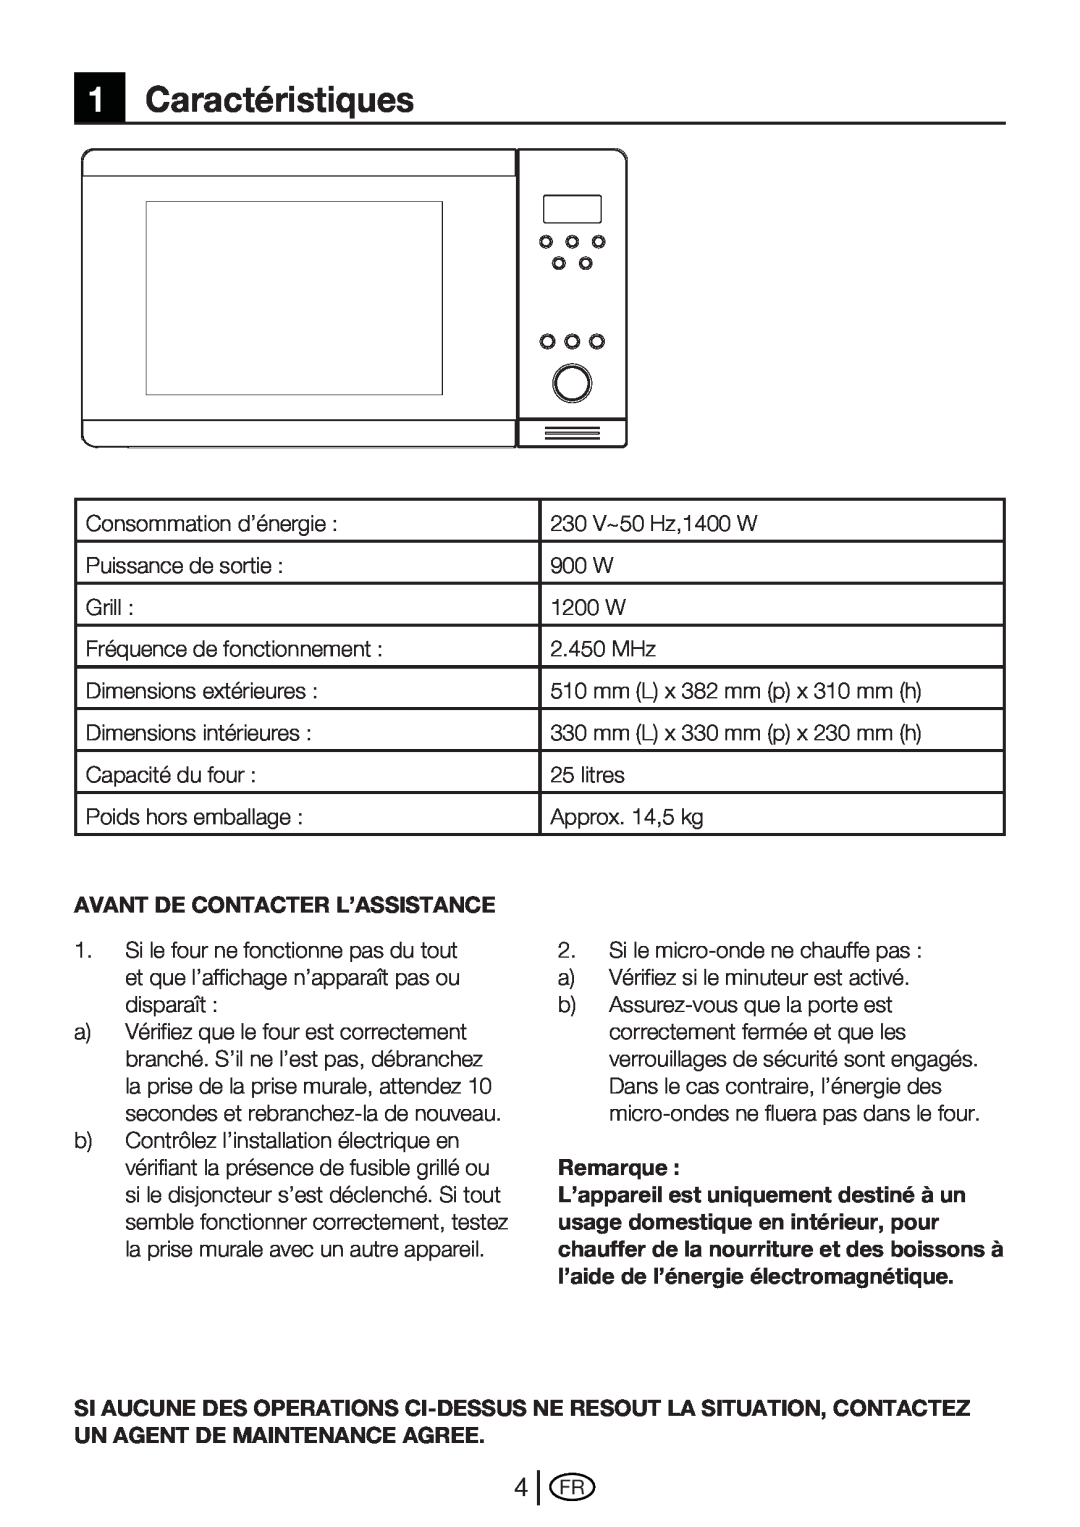 Beko MWB 2510 EX instruction manual 1Caractéristiques, Avant De Contacter L’Assistance, Remarque 